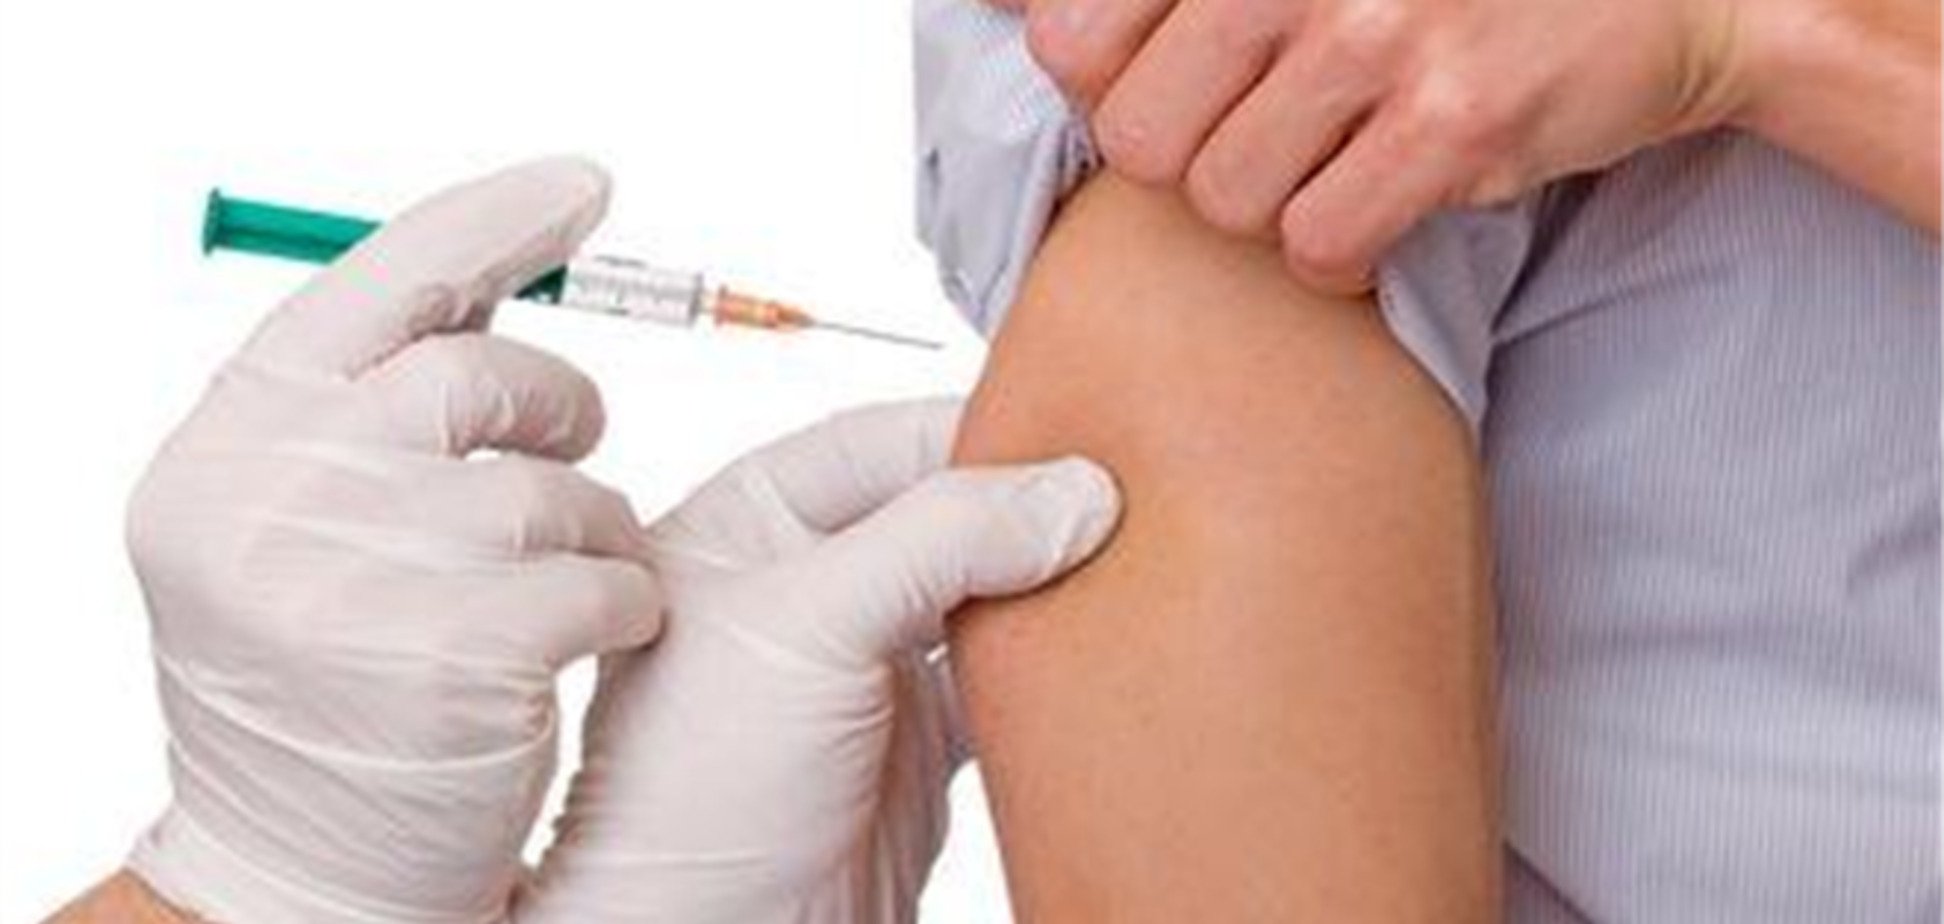 СМИ: Гослекслужба в разгар эпидемии гепатита заблокировала вакцину